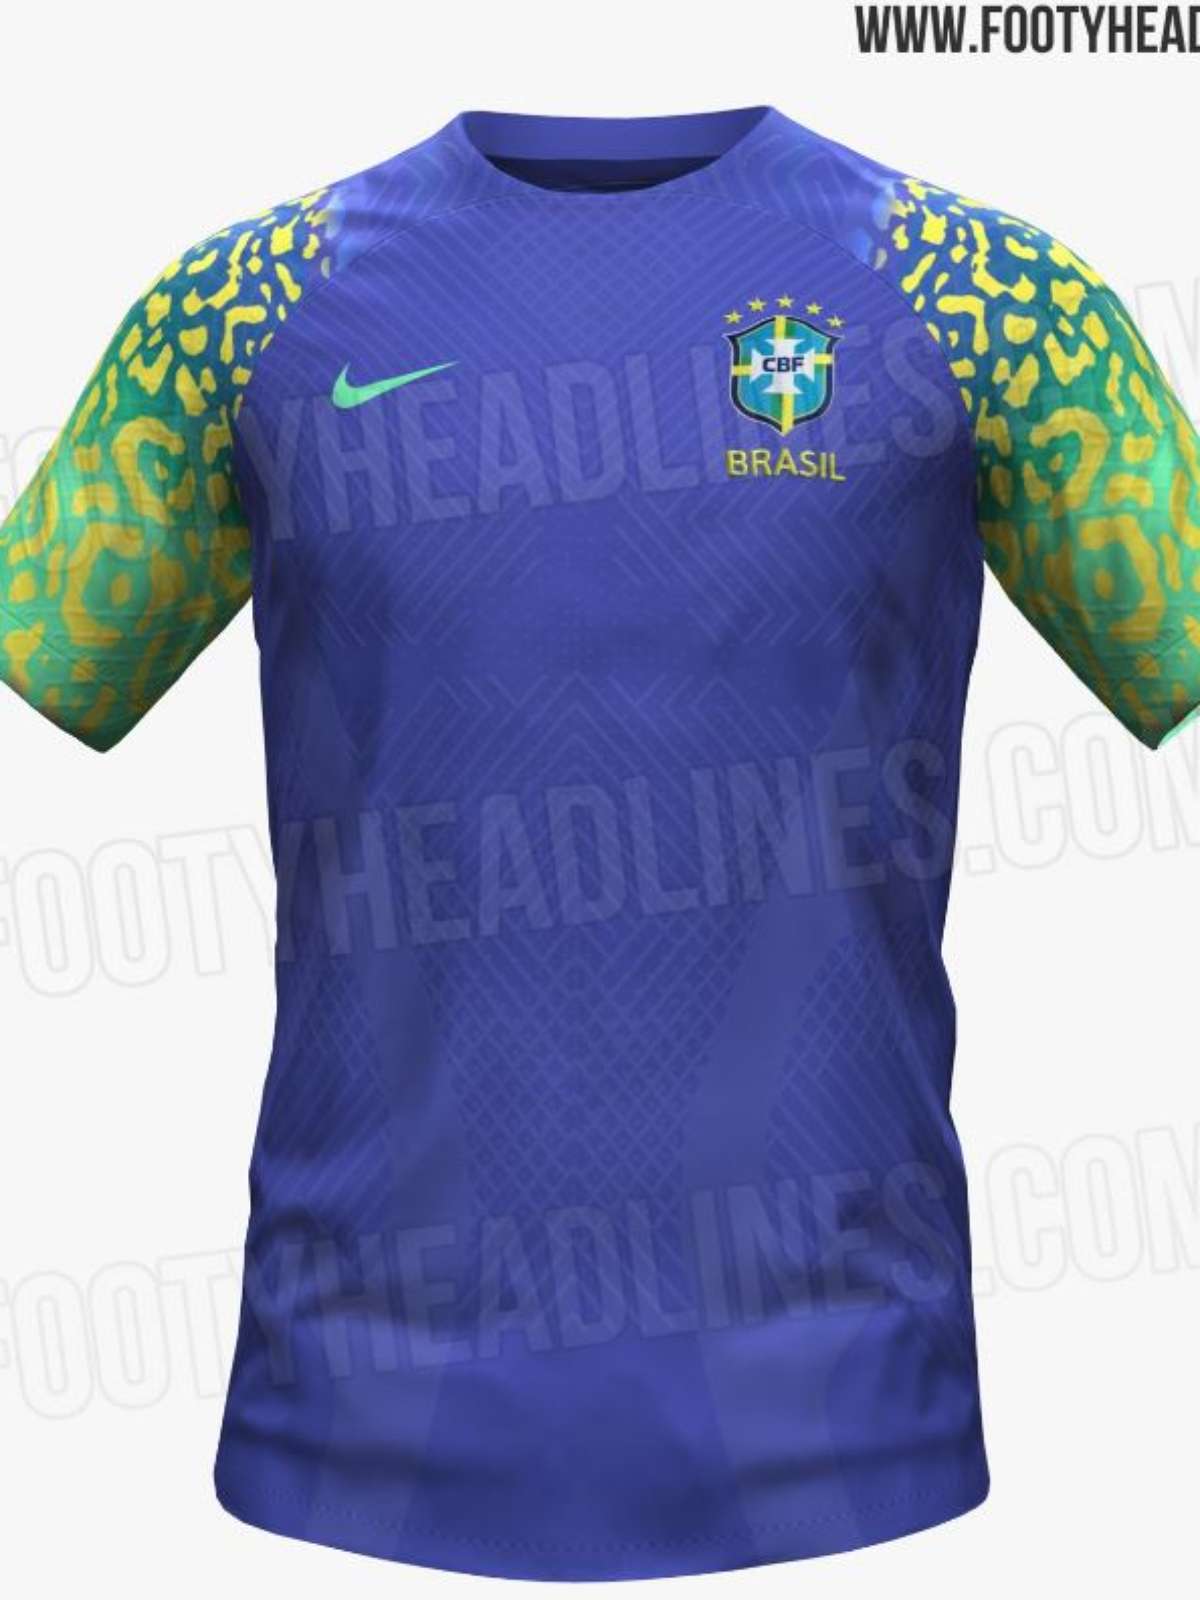 Camisas 10 da seleção brasileira nas Copas - 22/05/2018 - Copa do